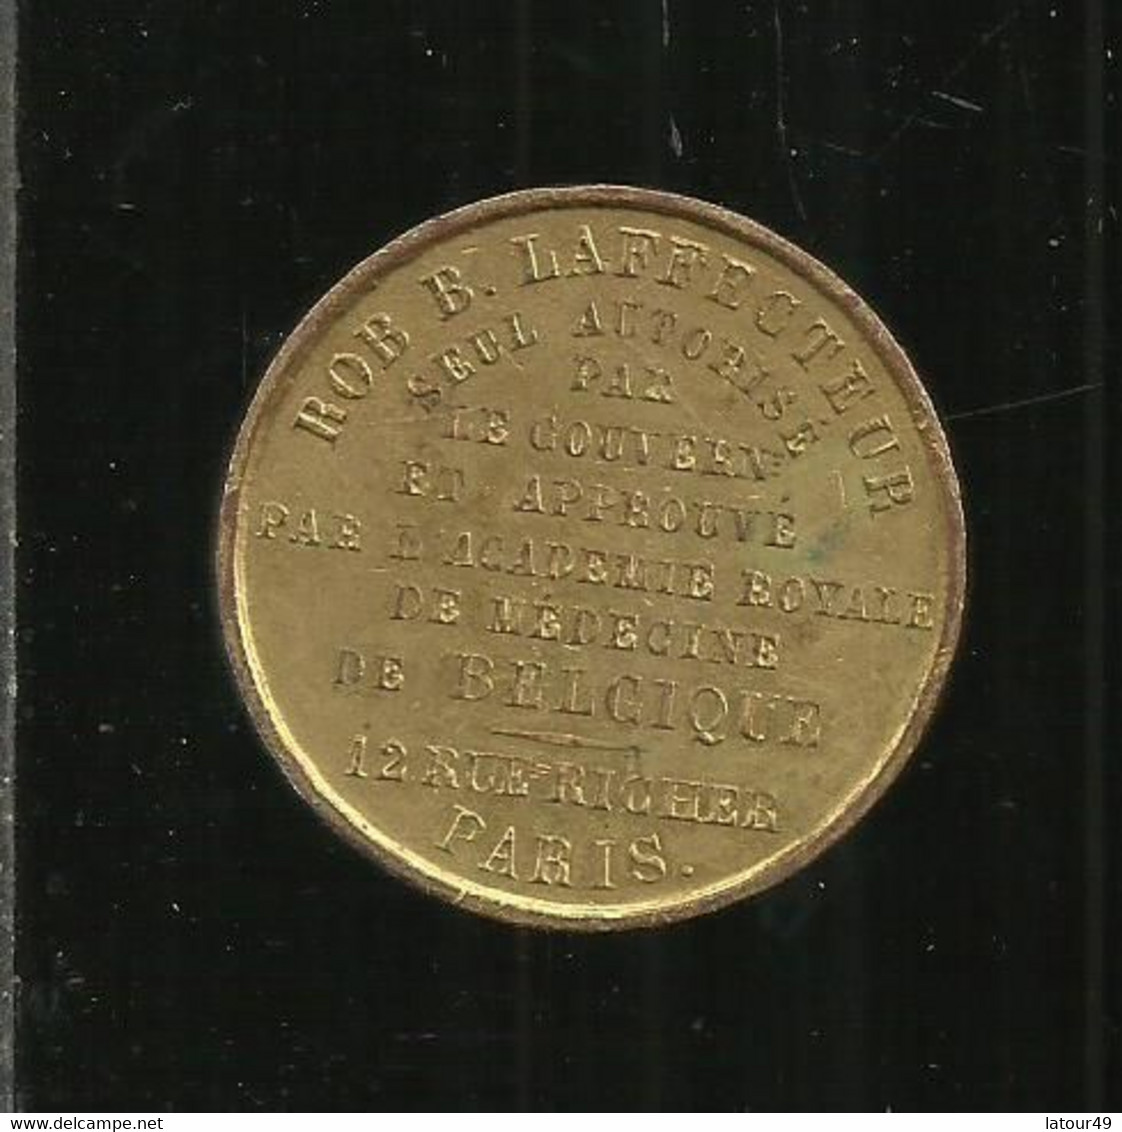 Ancienne Medaille  Academie Rle  De Medecine De Belgique Bob Laffecteur  Seul Autorise Par Le  Gouvernement Et Approuve - Monarchia / Nobiltà